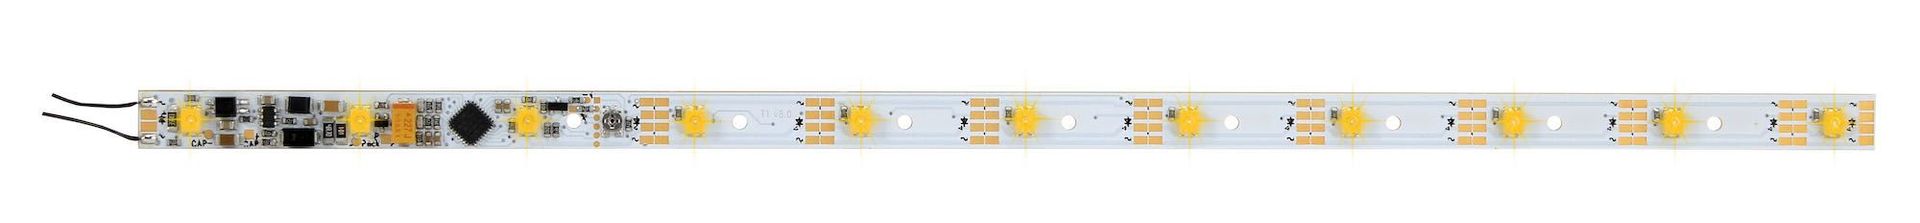 Viessmann 5076 - Waggon Innenbeleuchtung 11 LED´s gelb mit Funktionsdecoder H0 1:87